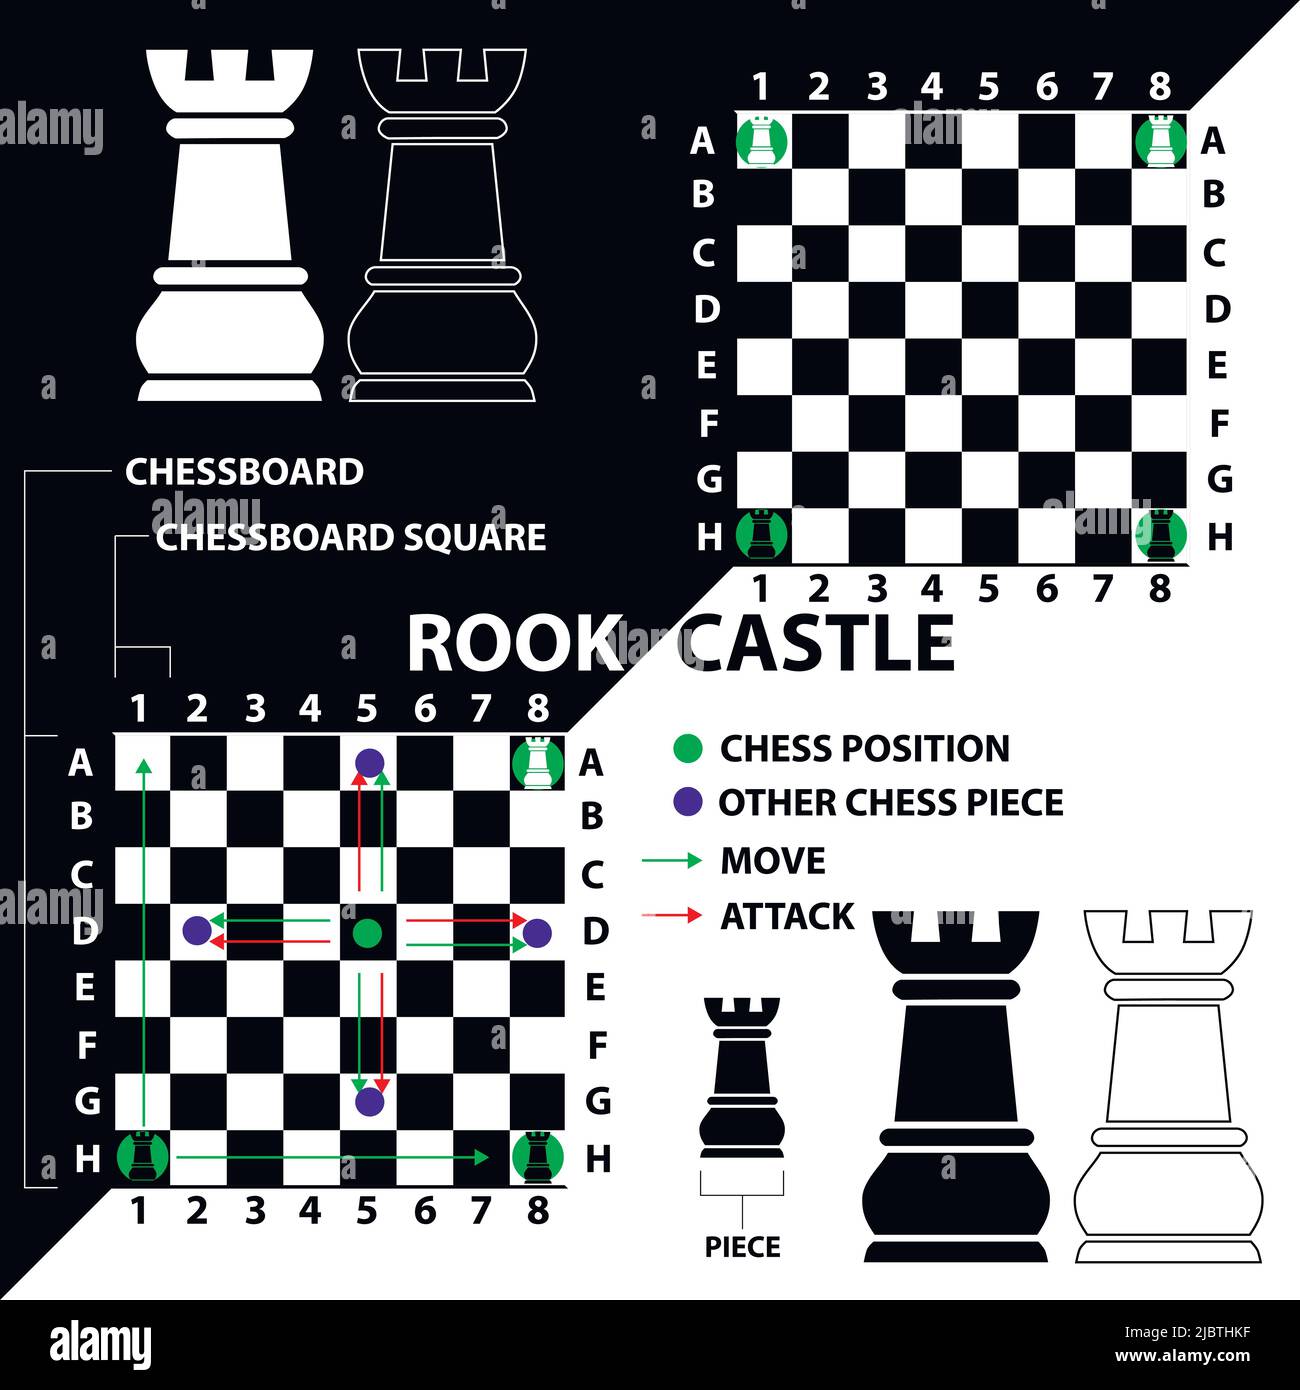 Black Pawn Schach-stück Mit Einem Flachen Depth Of Field